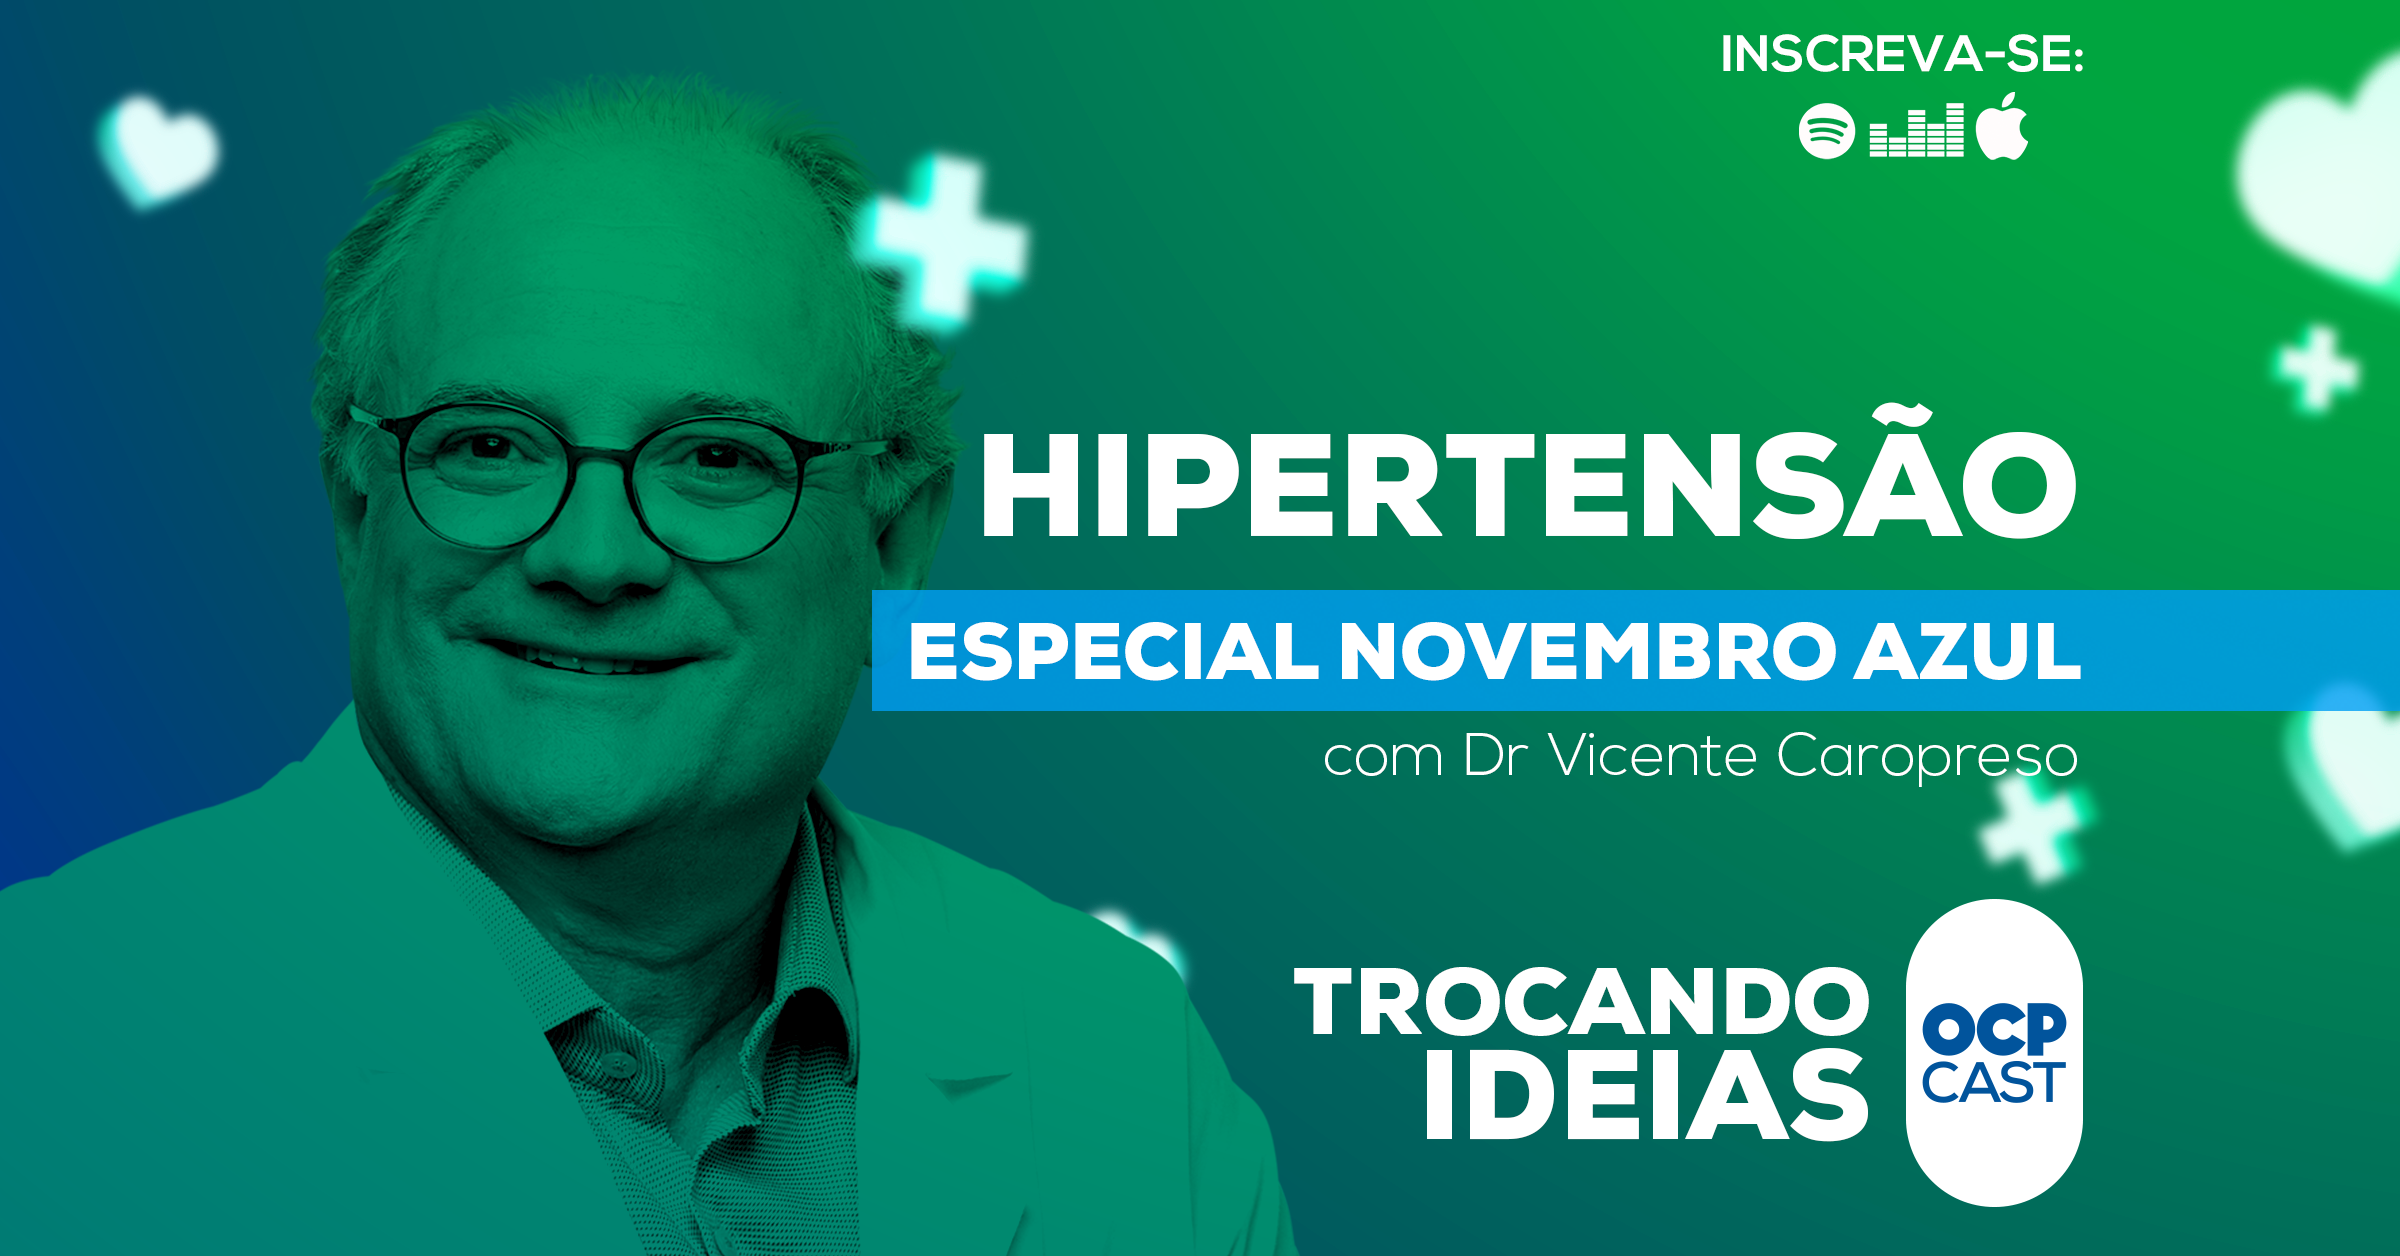 Podcast Trocando ideias com Dr Vicente Caropreso: Especial Novembro Azul - Hipertensão